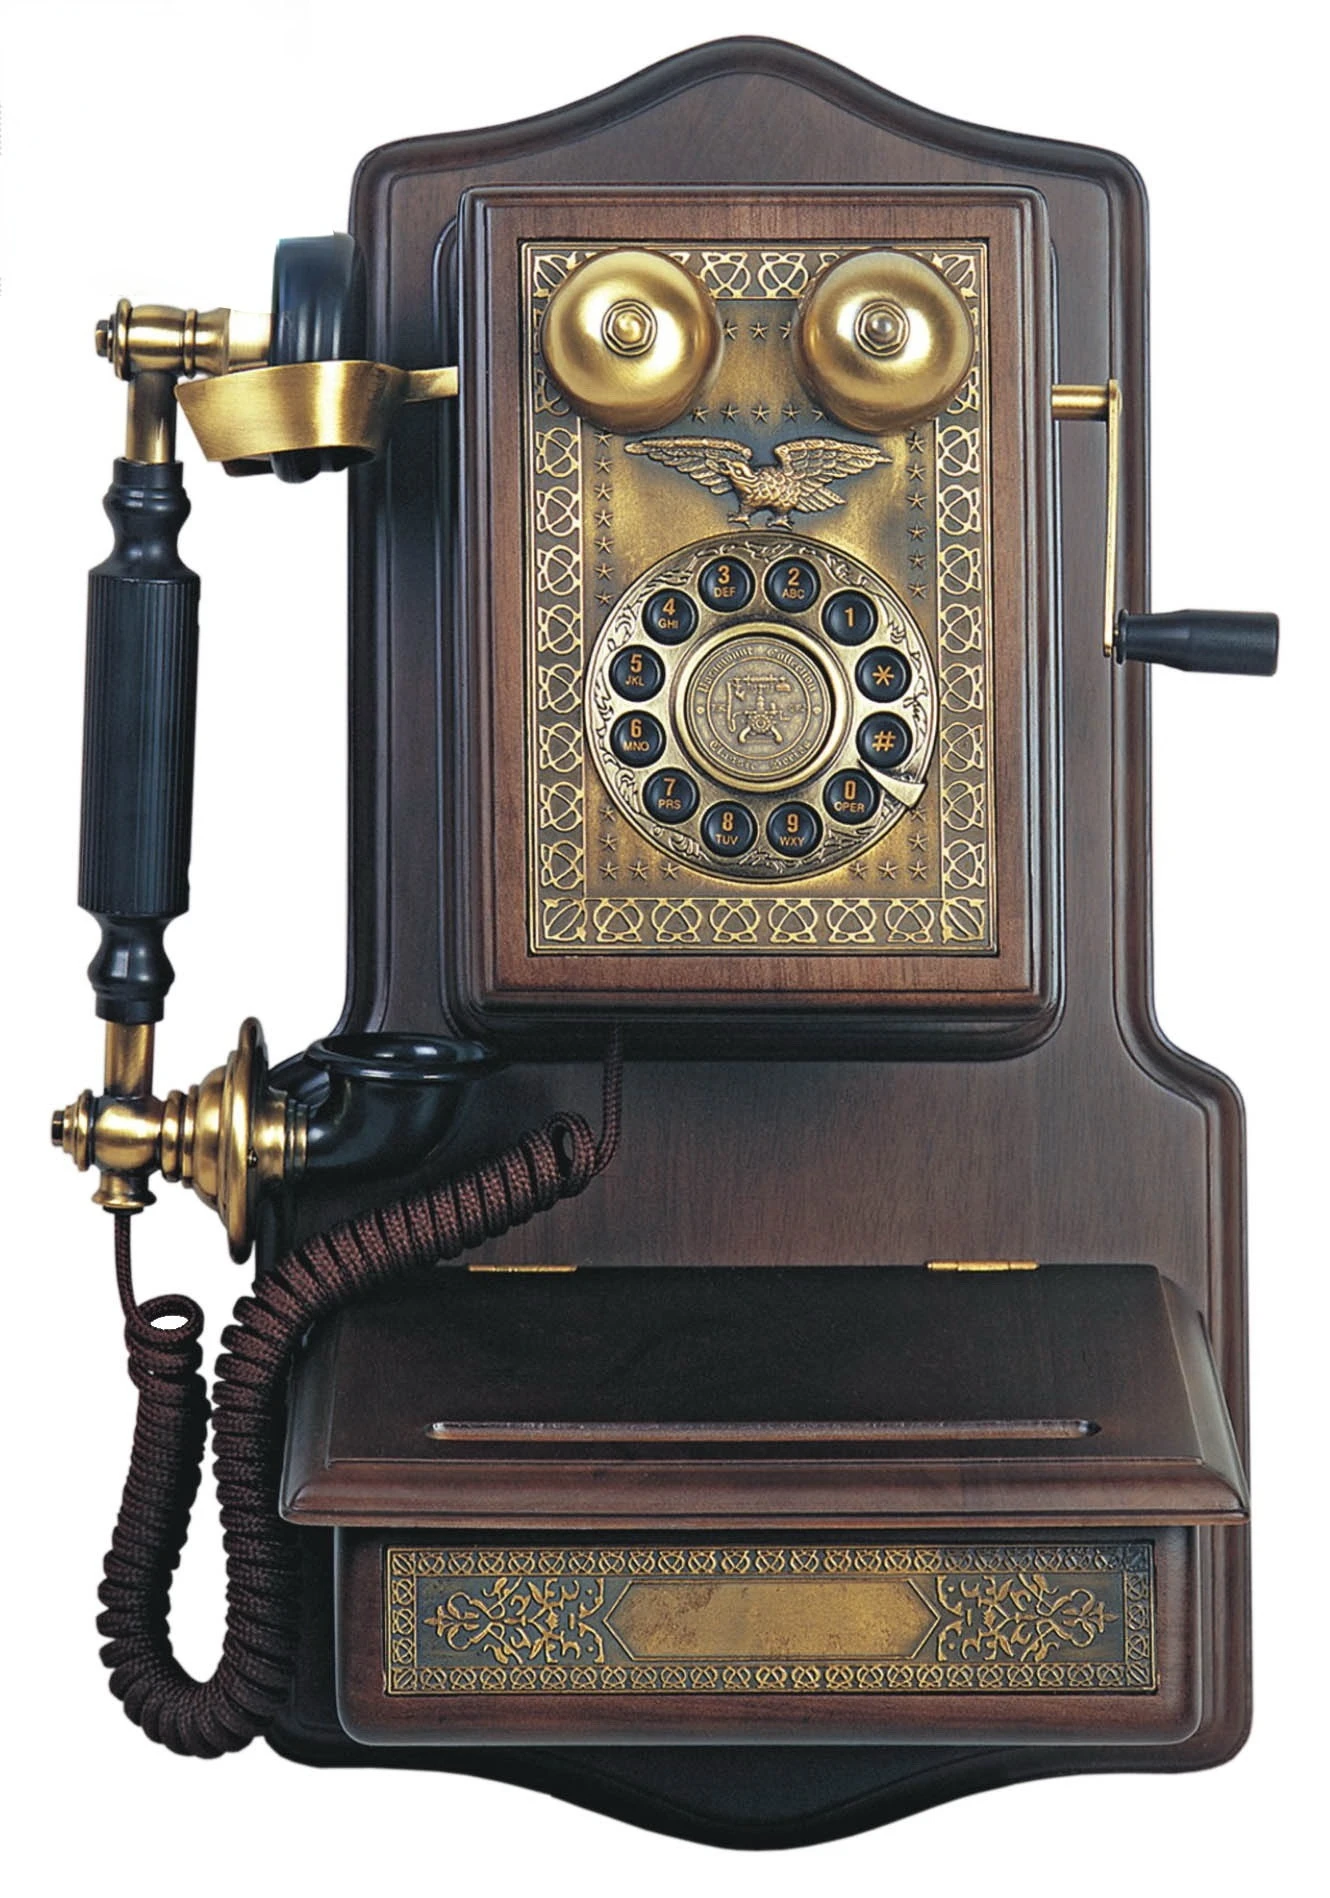 Telefono decorativo retrò Vintage con filo 1907 Deluxe Push Button telefono da parete in legno